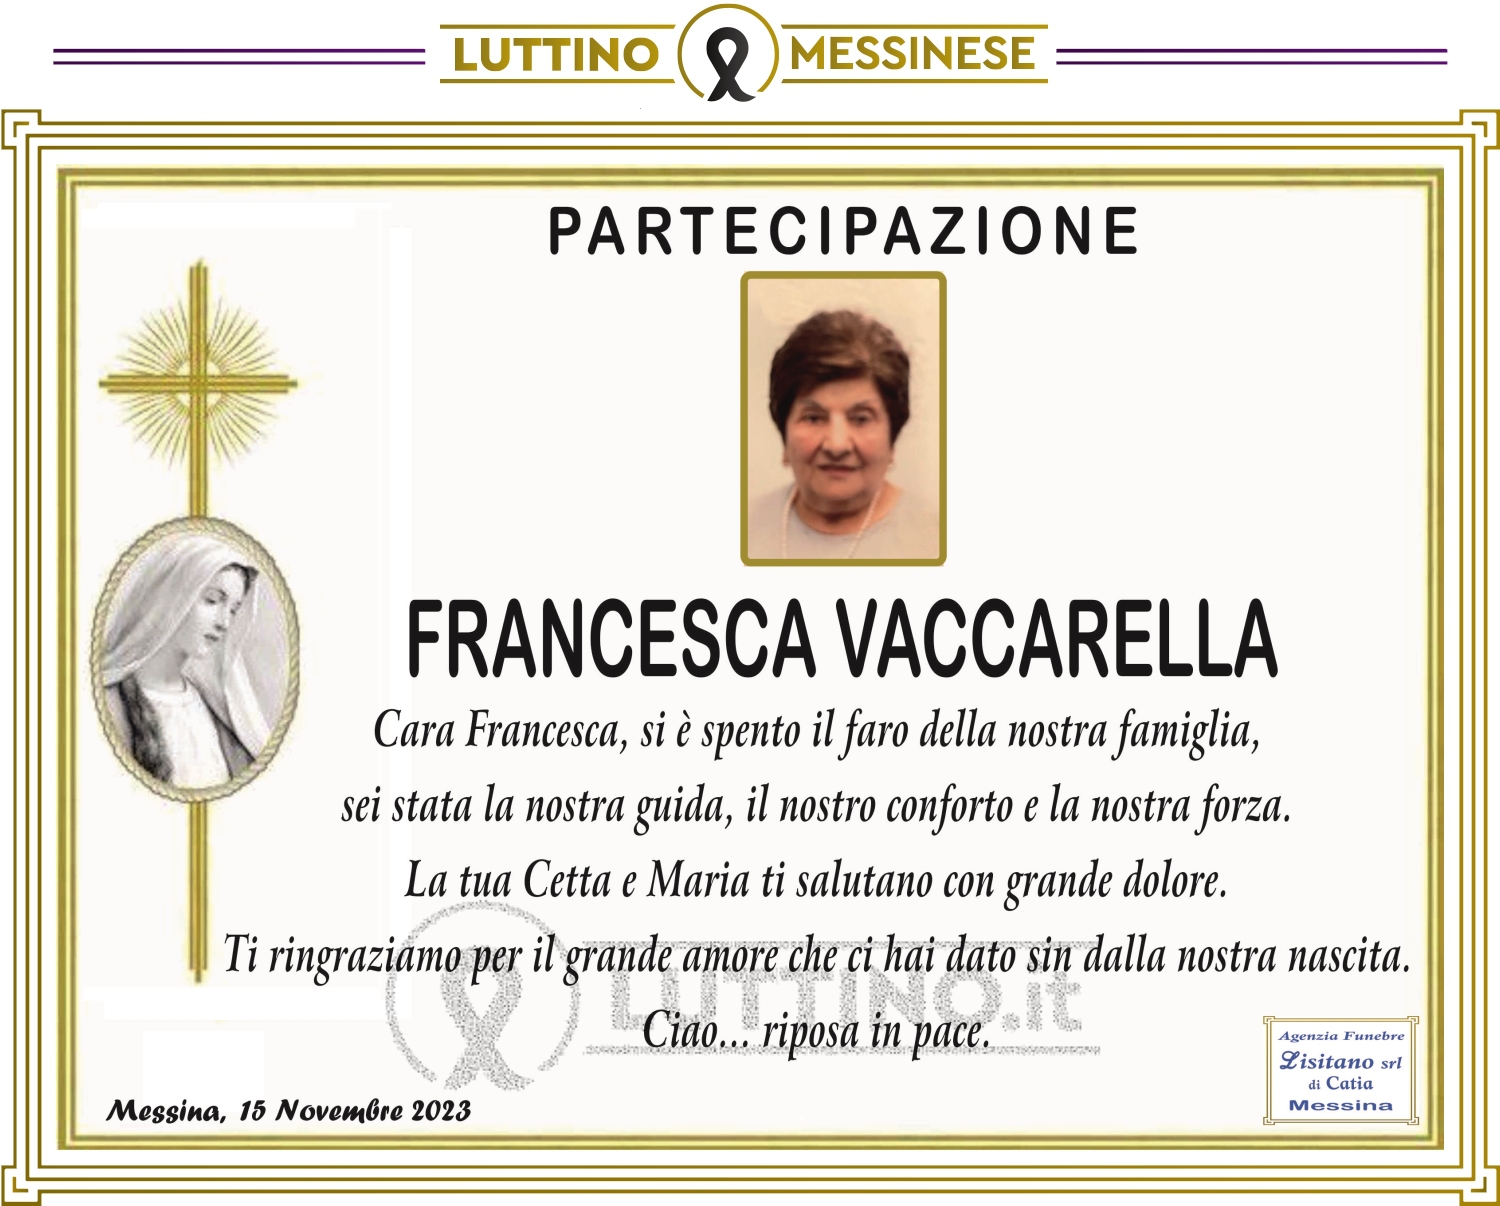 Francesca Vaccarella